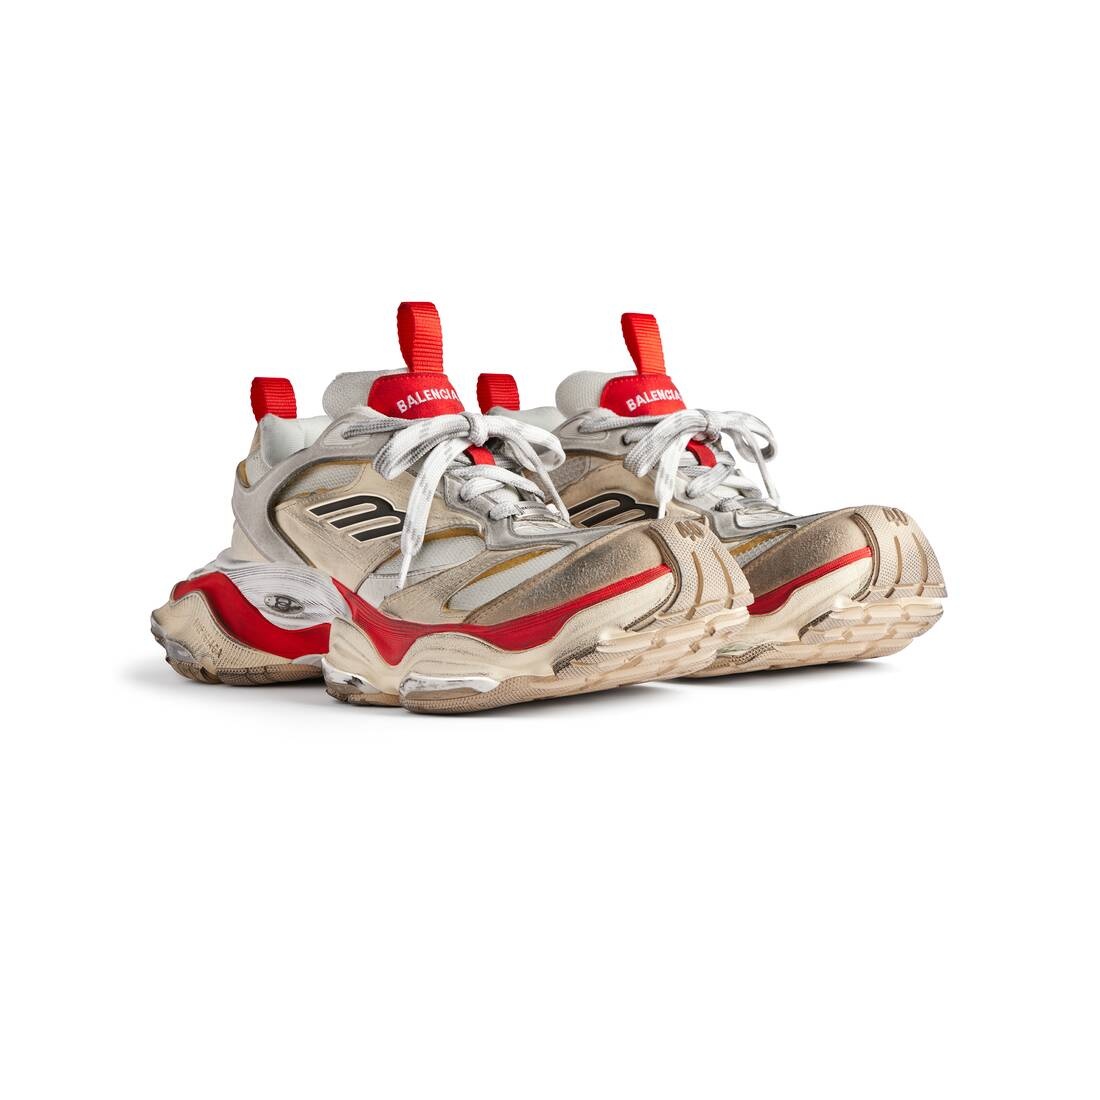 Men's Cargo Sneaker  in Beige/grey/red - 2